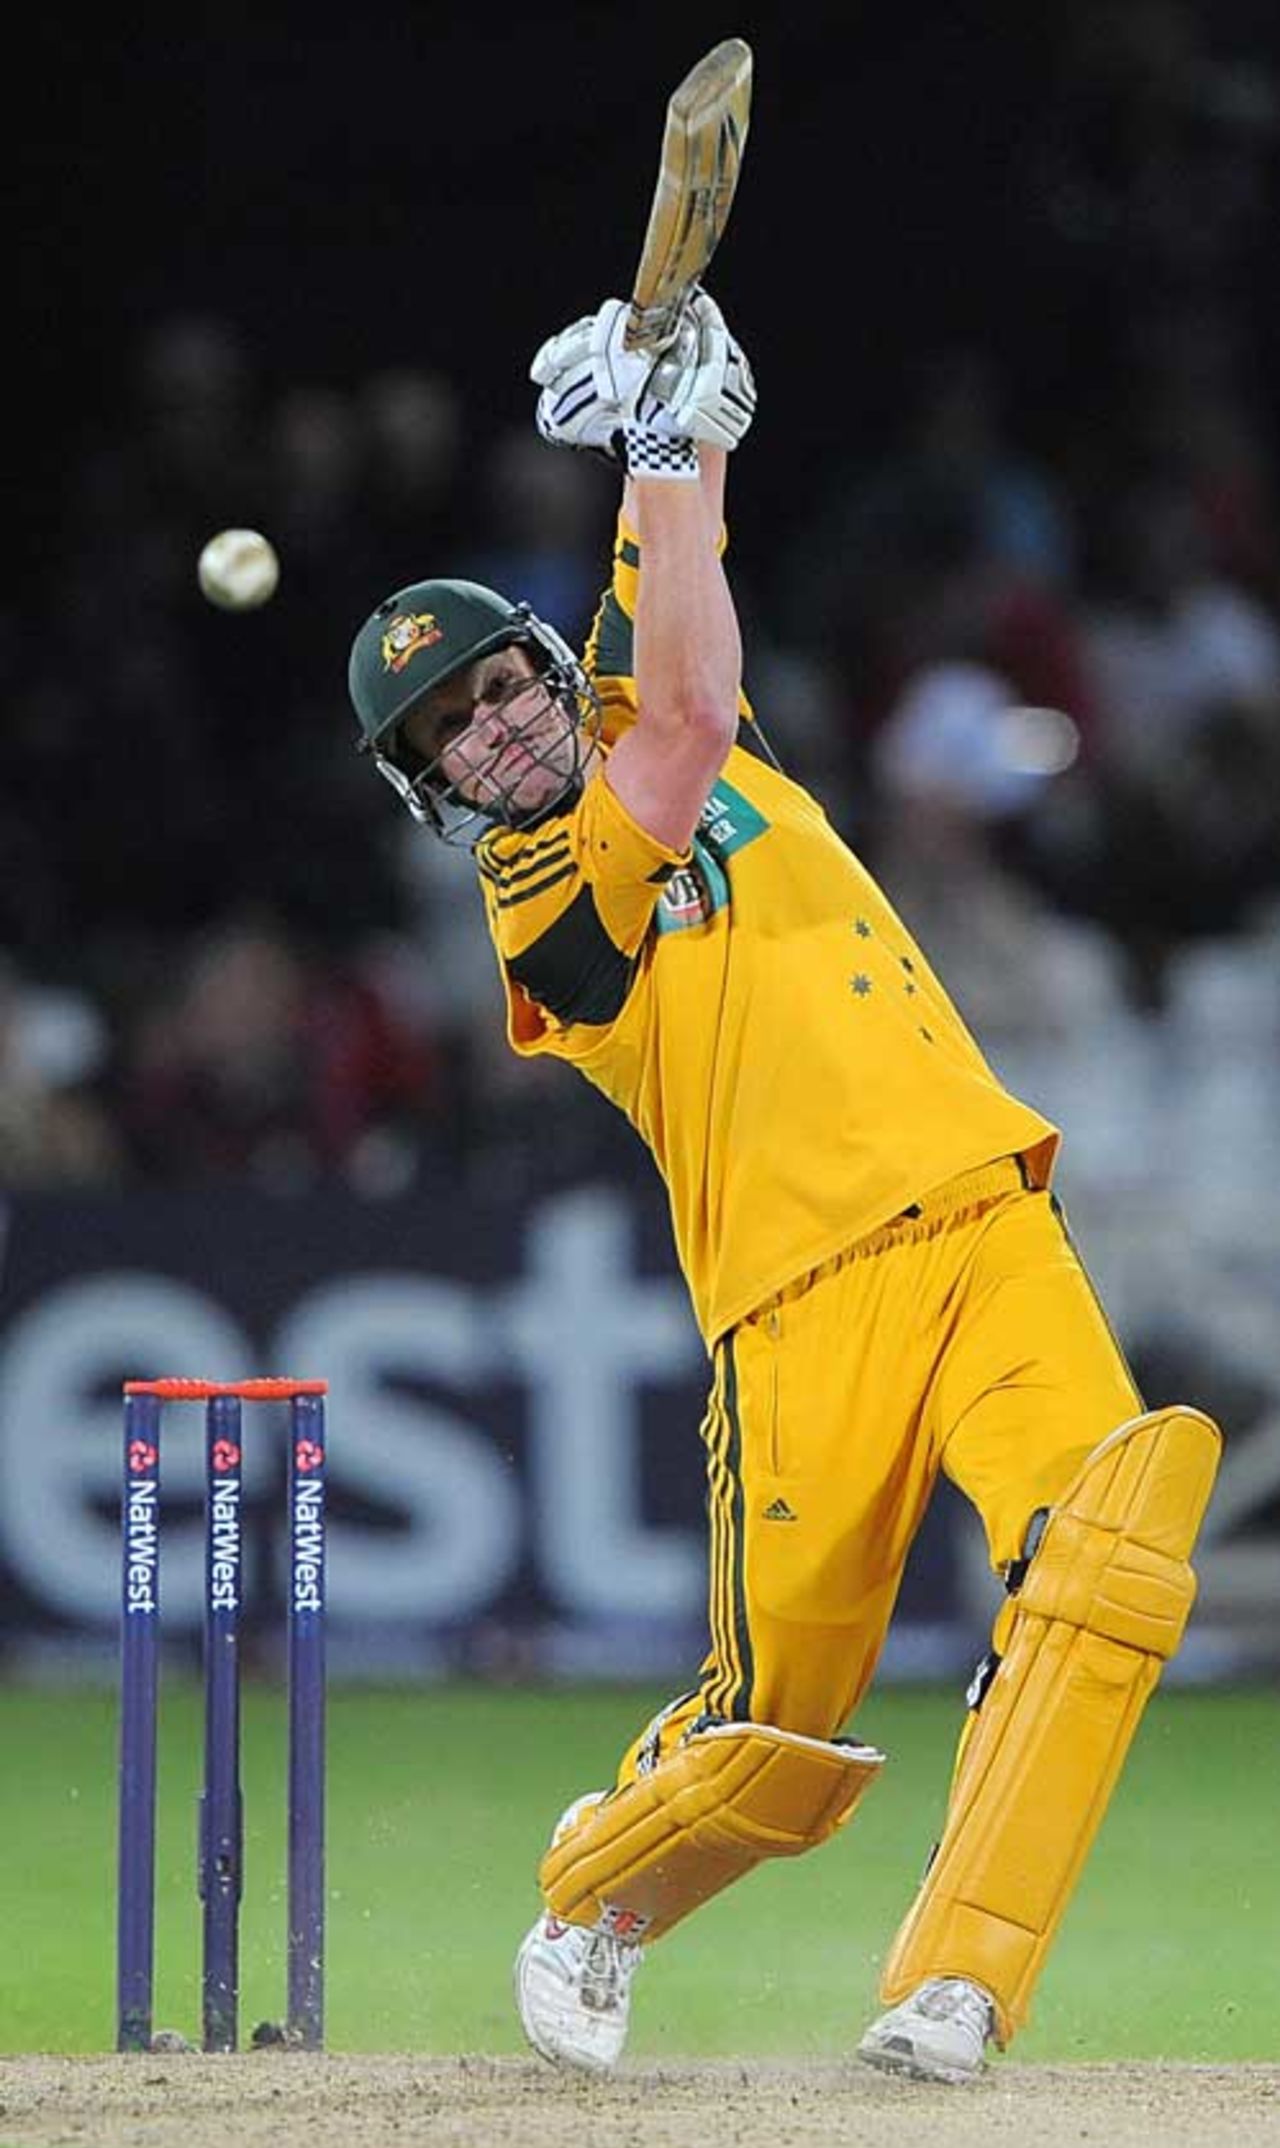 Cameron White helped Australia across the line, England v Australia, 5th ODI, Trent Bridge, September 15, 2009